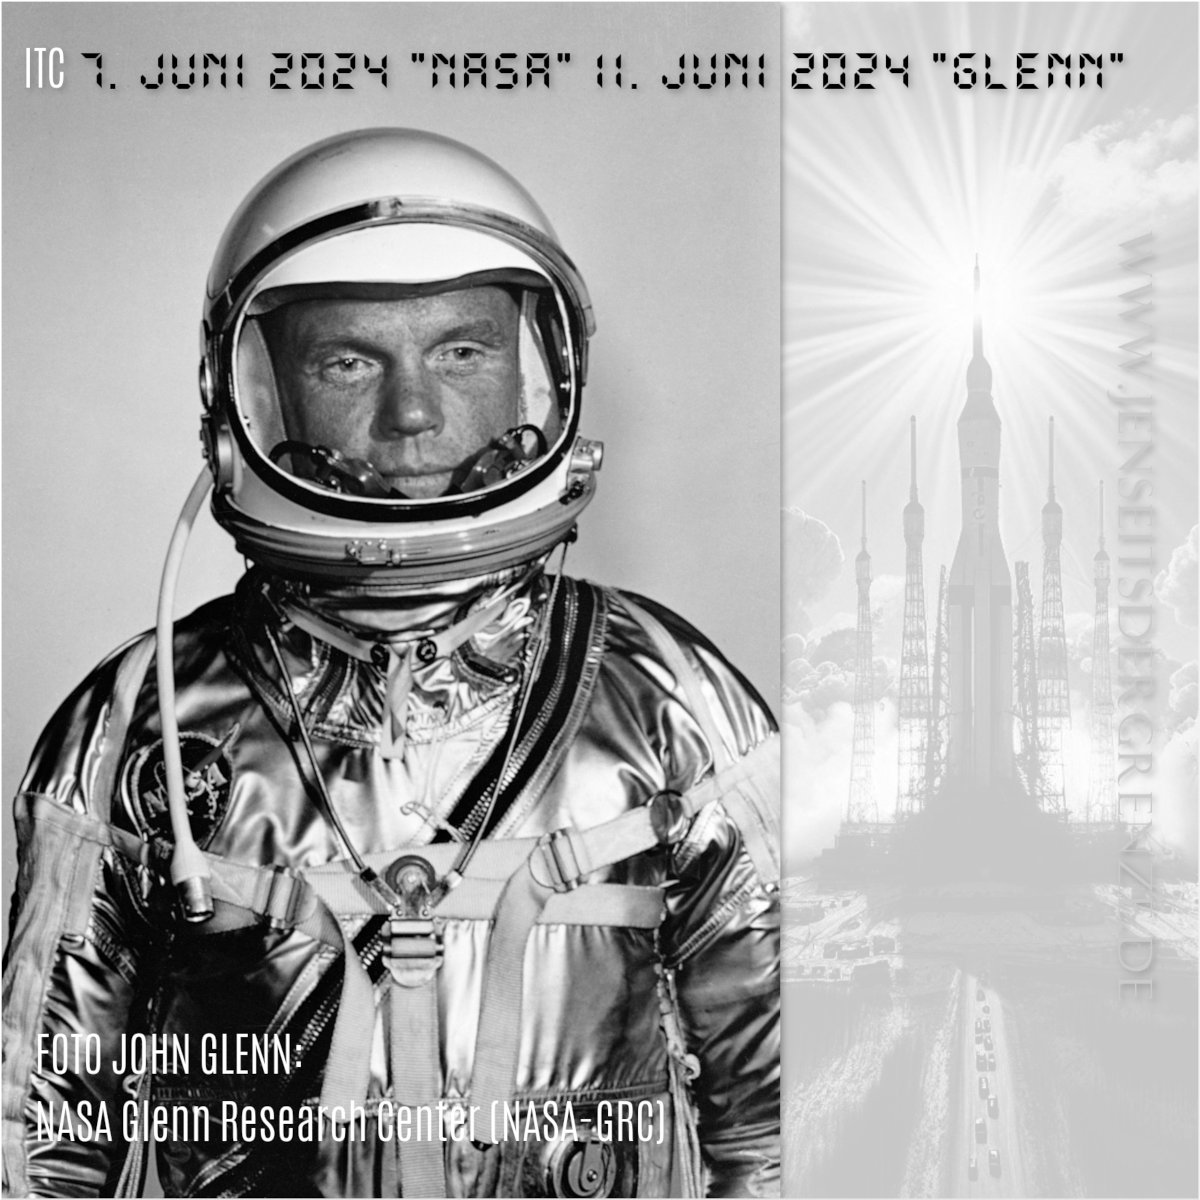 Folgend zwei protokollierte und zusammenhängende Nachrichten von John Glenn. John Glenn war eine zentrale Figur in der Geschichte der amerikanischen Raumfahrt und eine Ikone des 20. Jahrhunderts.